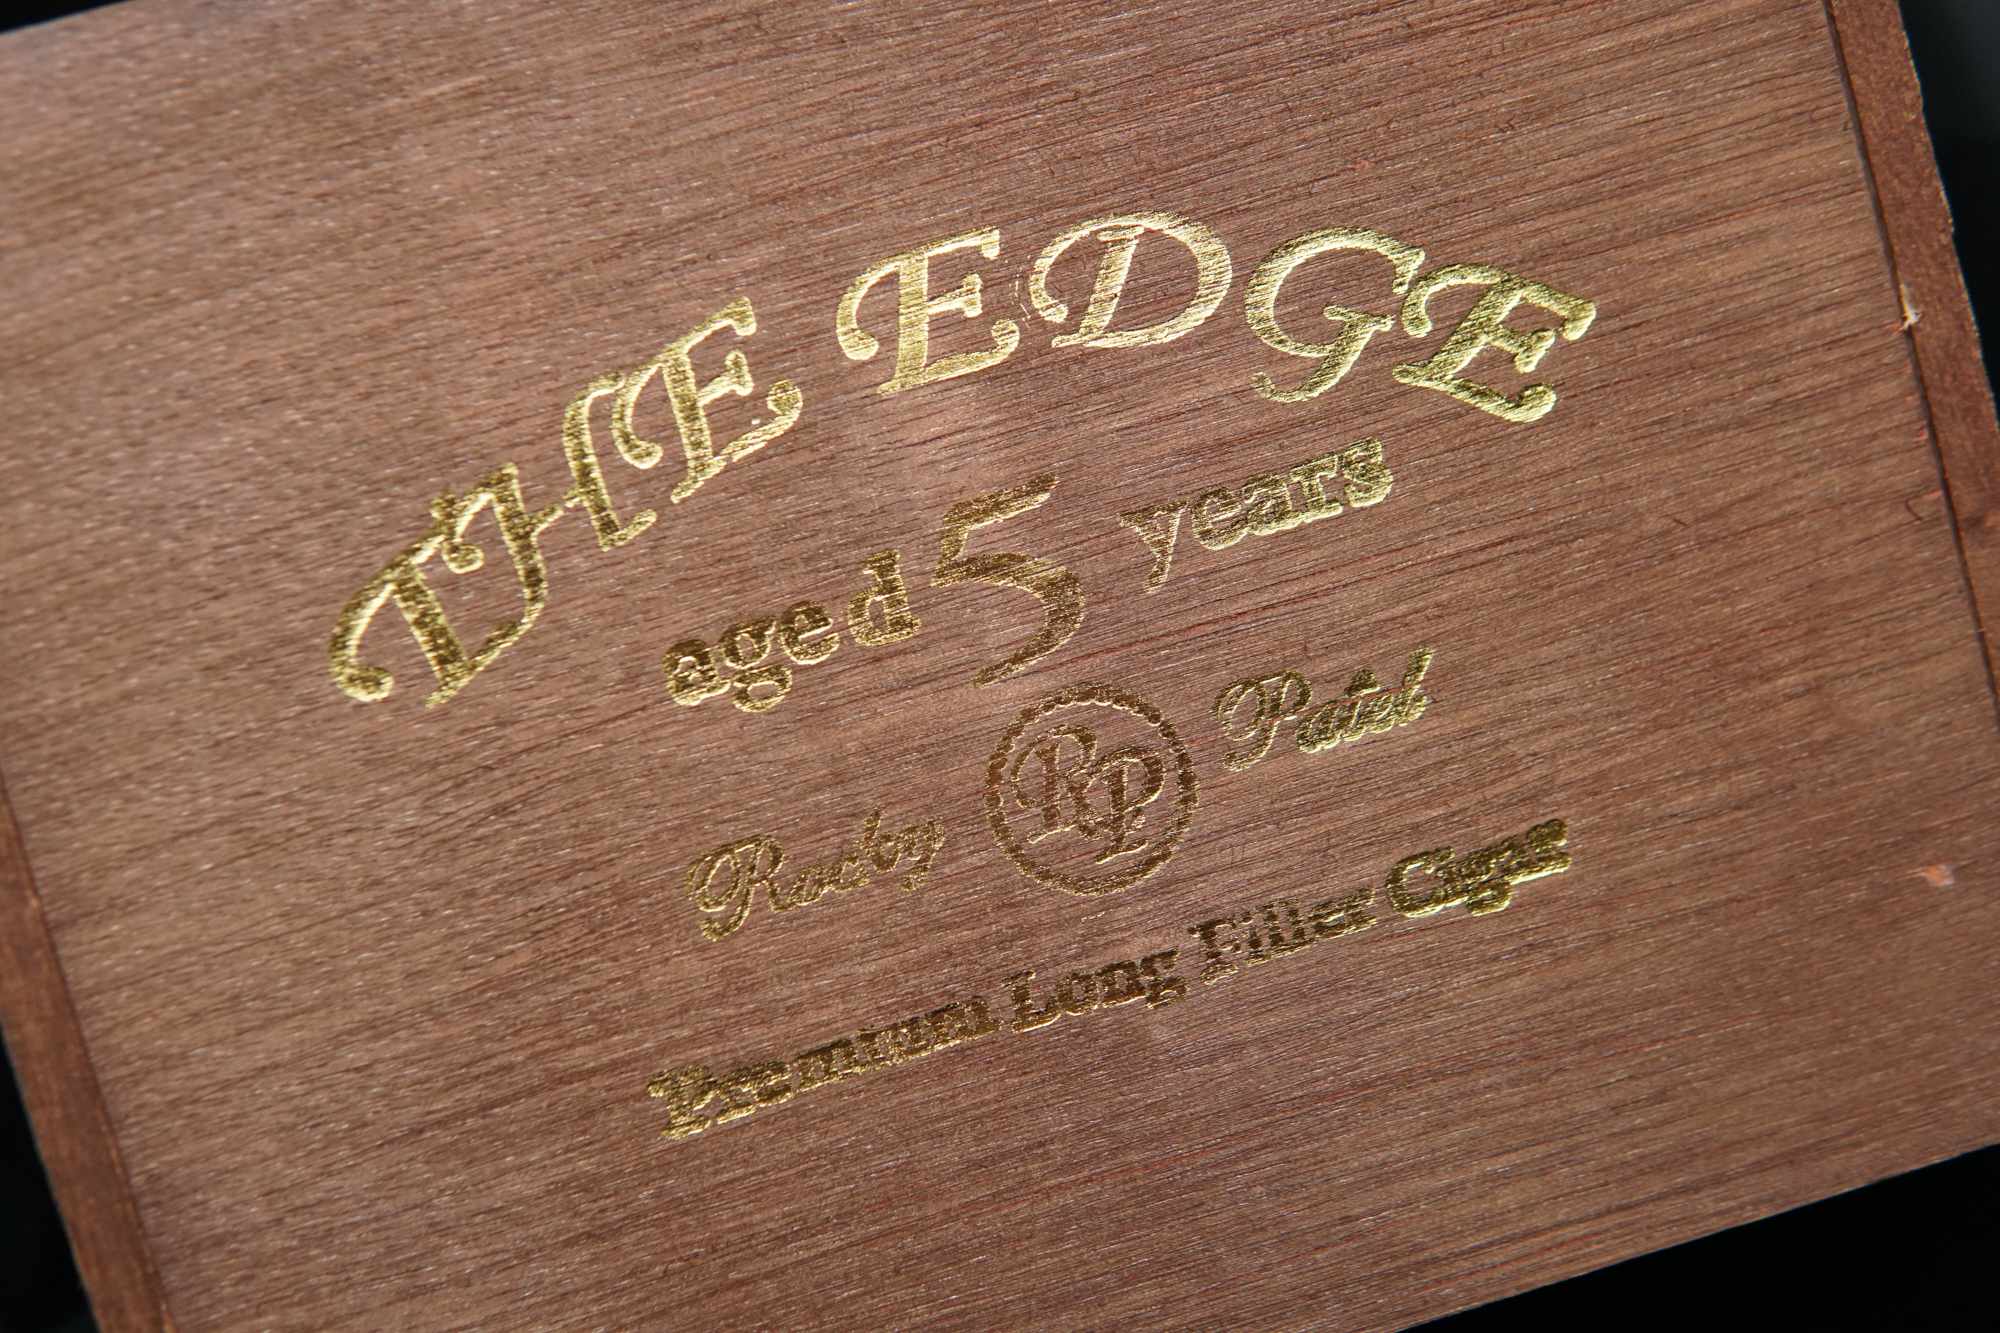 The edge cigar box